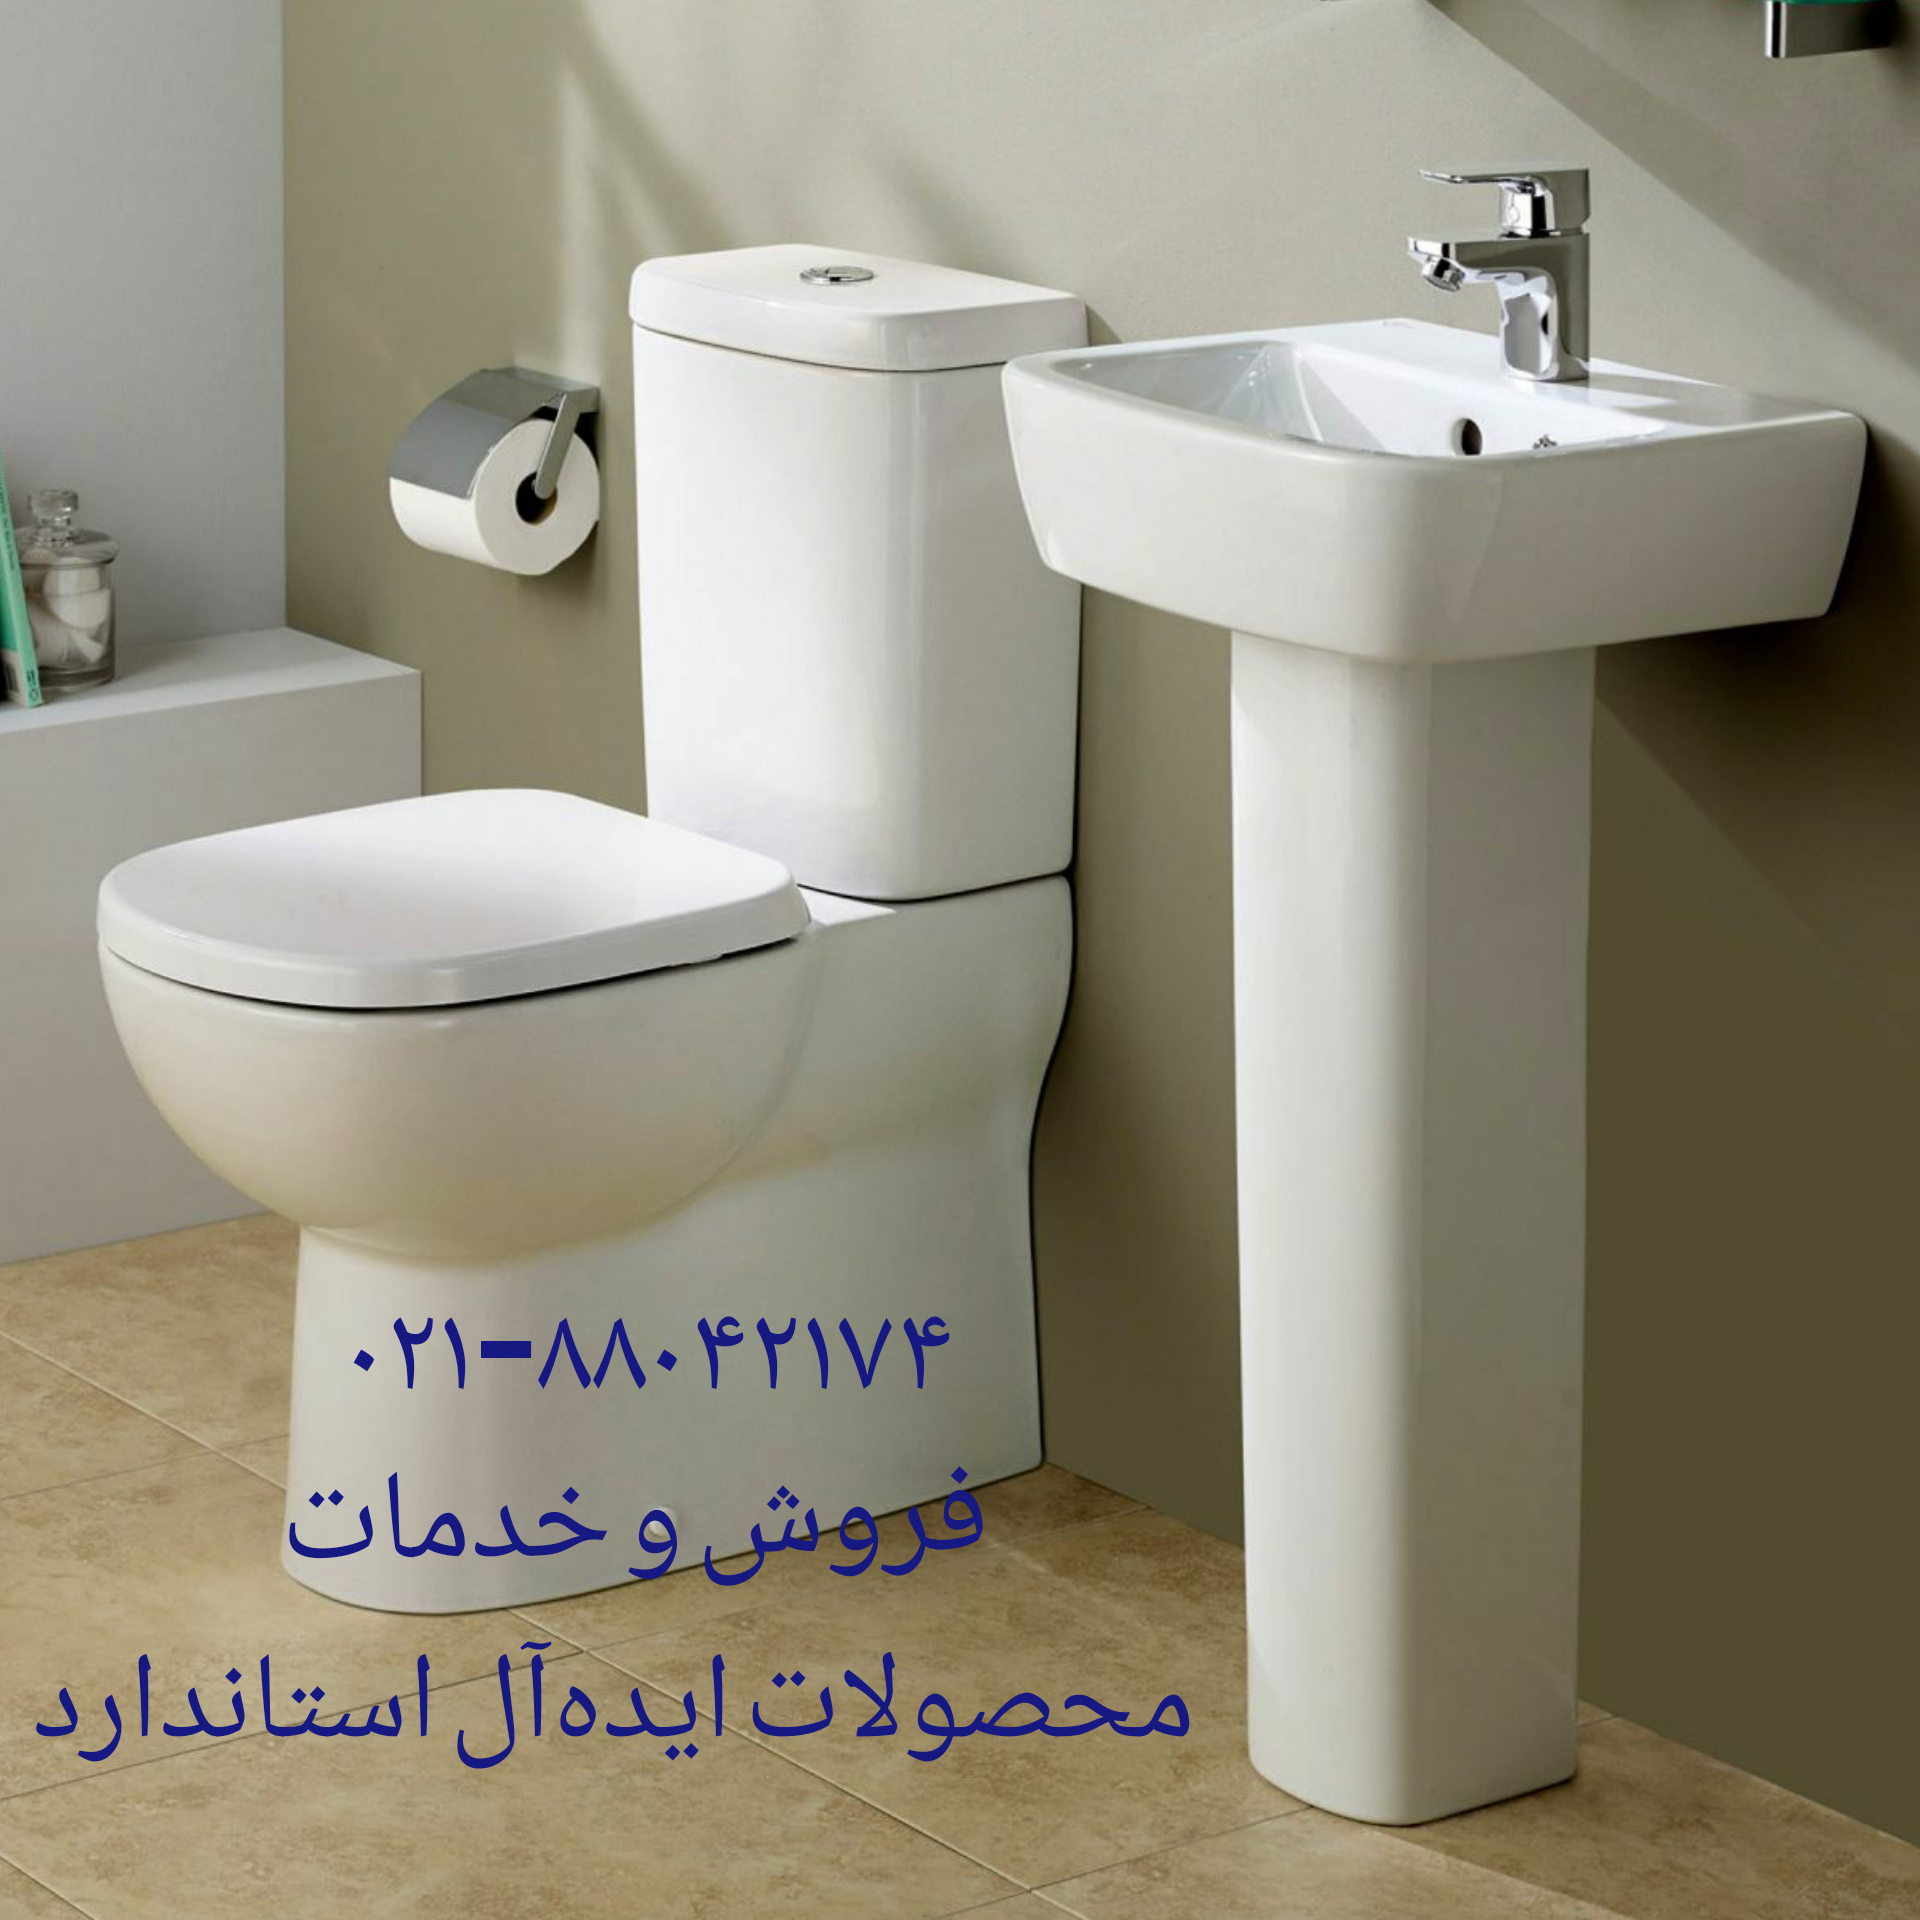 فروش قطعات و لوازم توالت فرنگی ایده آل استاندارد 09121507825// تعمیرات انواع توالت فرنگی در محل